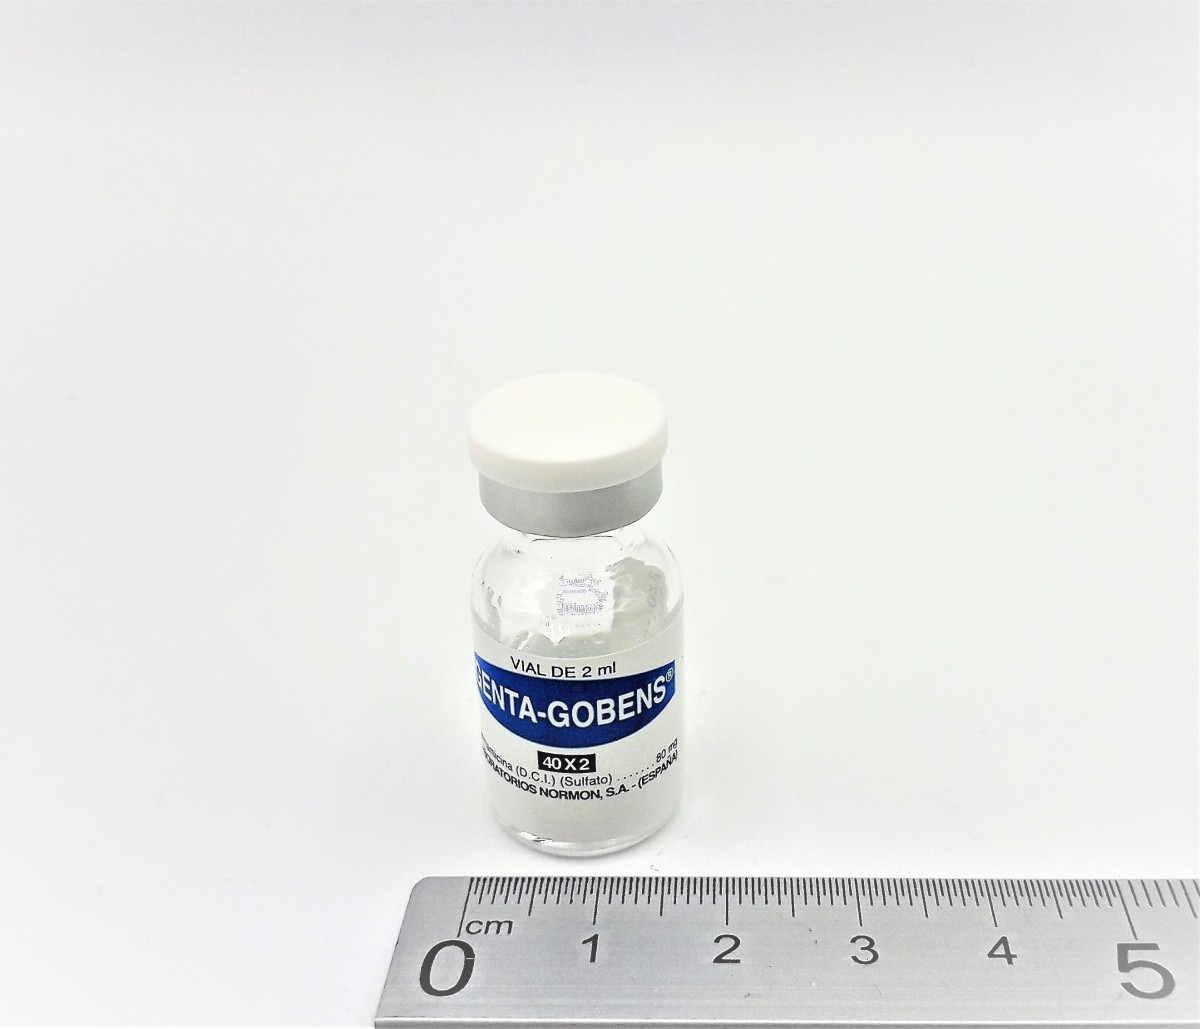 GENTA GOBENS 40 MG/ML SOLUCION INYECTABLE Y PARA PERFUSION, 100 viales de 2 ml fotografía de la forma farmacéutica.